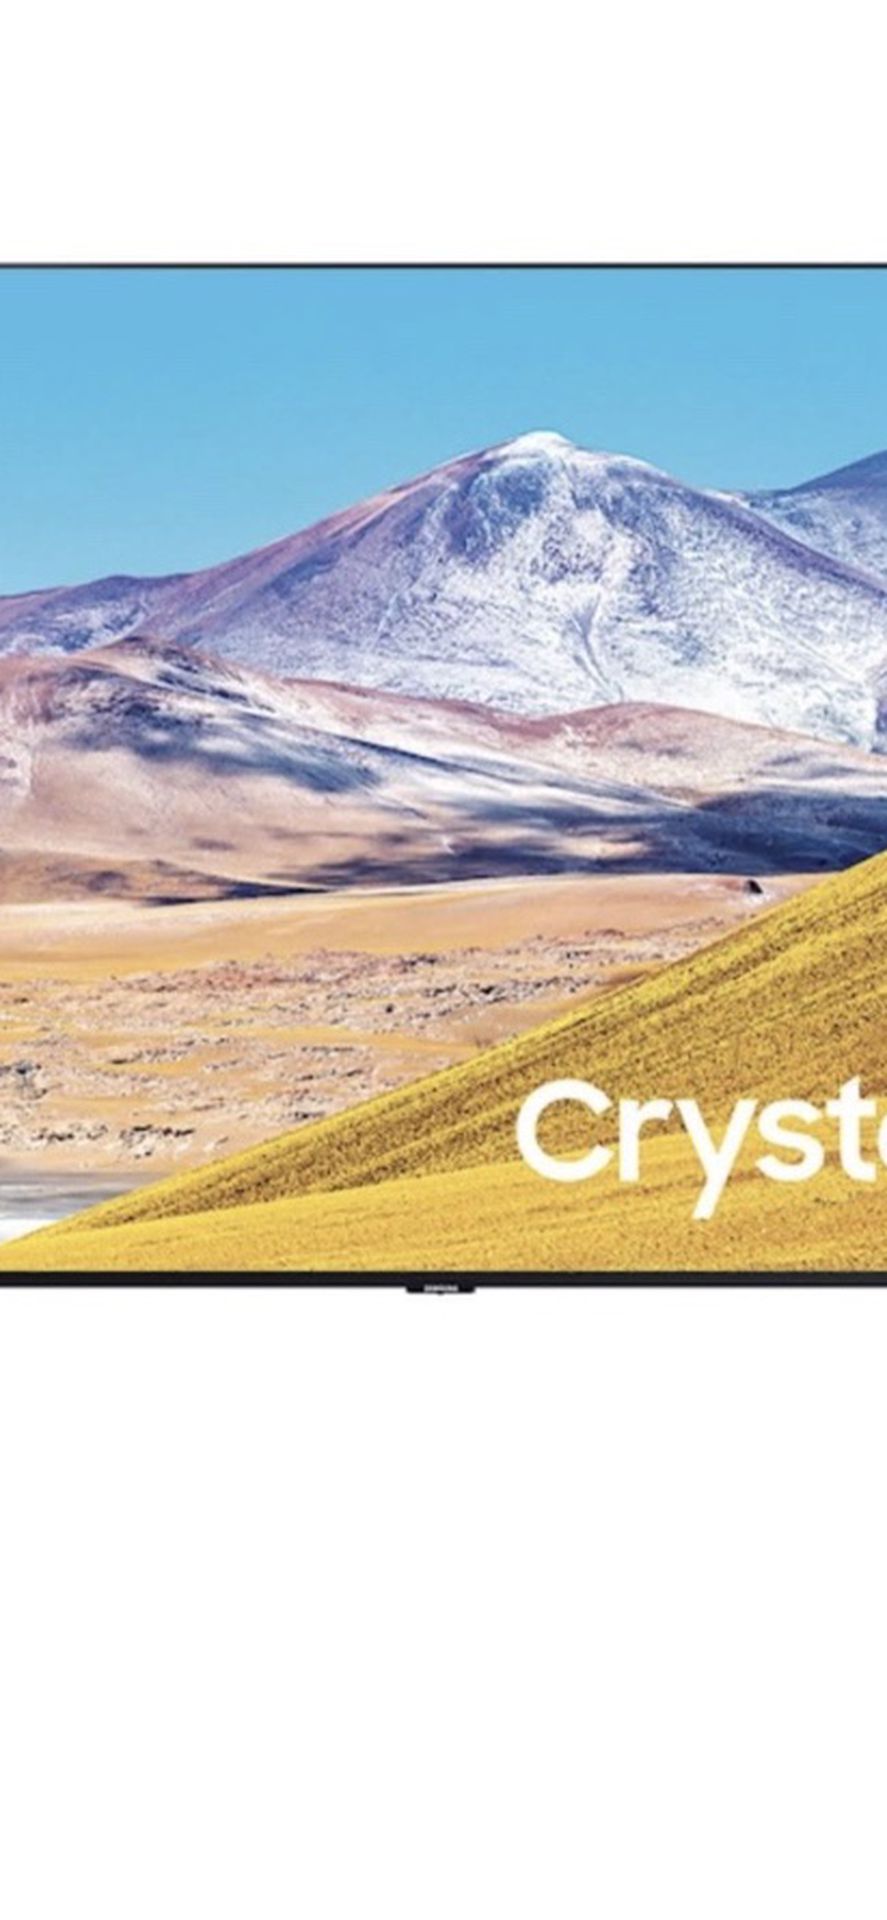 Samsung 55” 8 Series Crystal UHD/LED 4K Smart TV